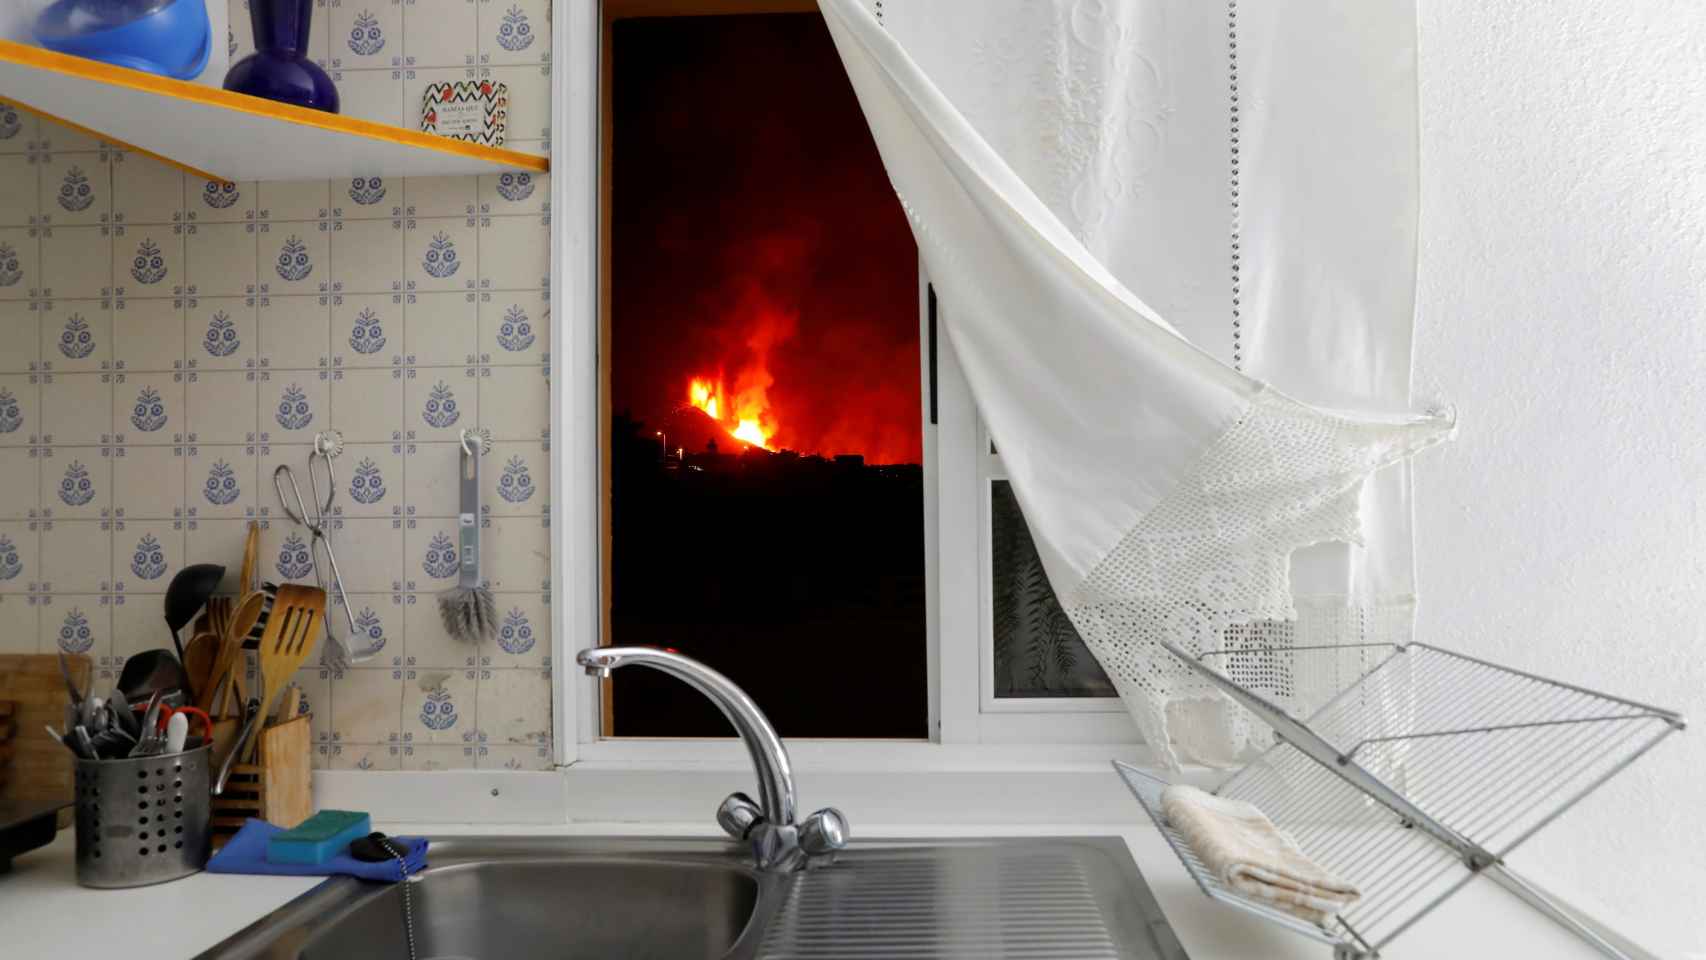 La lava vista desde la ventana de una cocina.